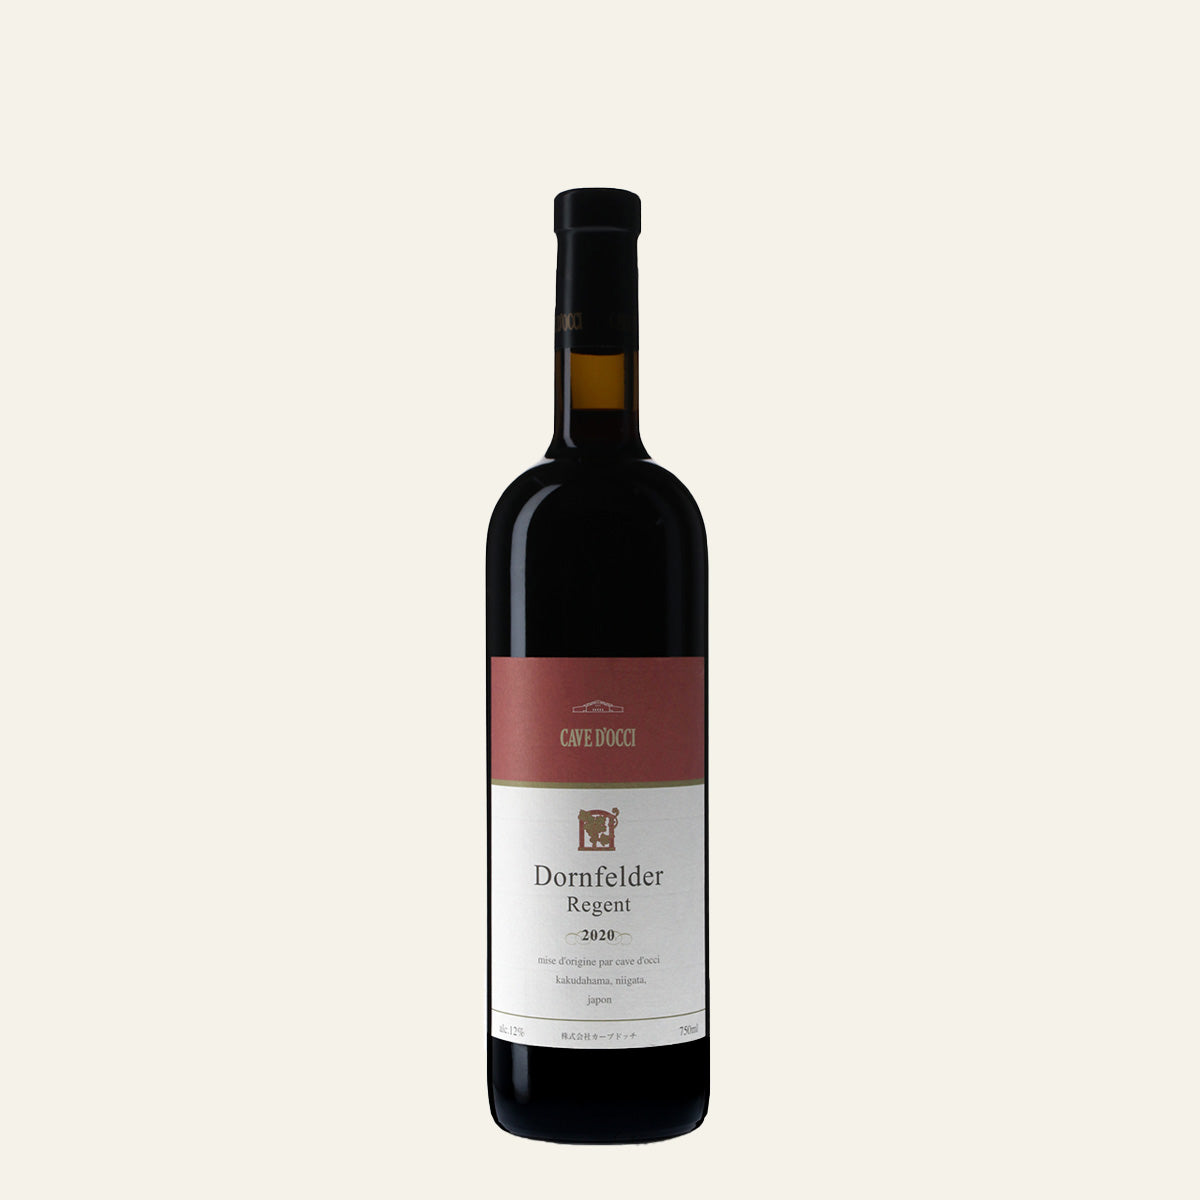 2020 ドルンフェルダー&レゲント /カーブドッチ・ワイナリー /赤ワイン 